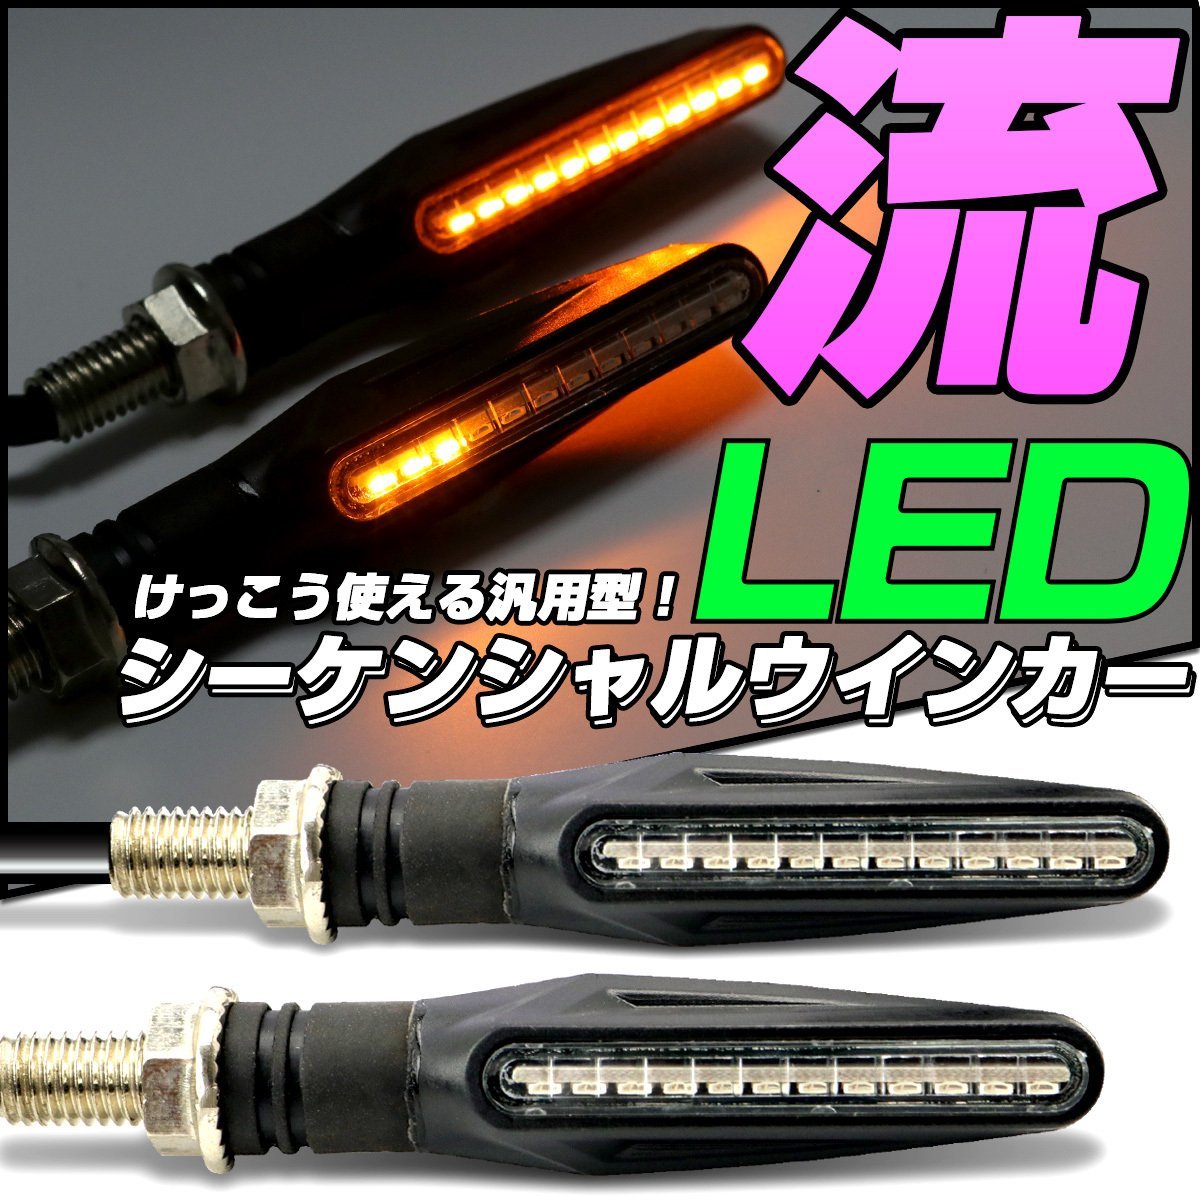 LED シーケンシャル ウインカー スリム 汎用 2本セット 取付ネジ M10 側面発光LED採用 薄型デザイン F-298_画像1